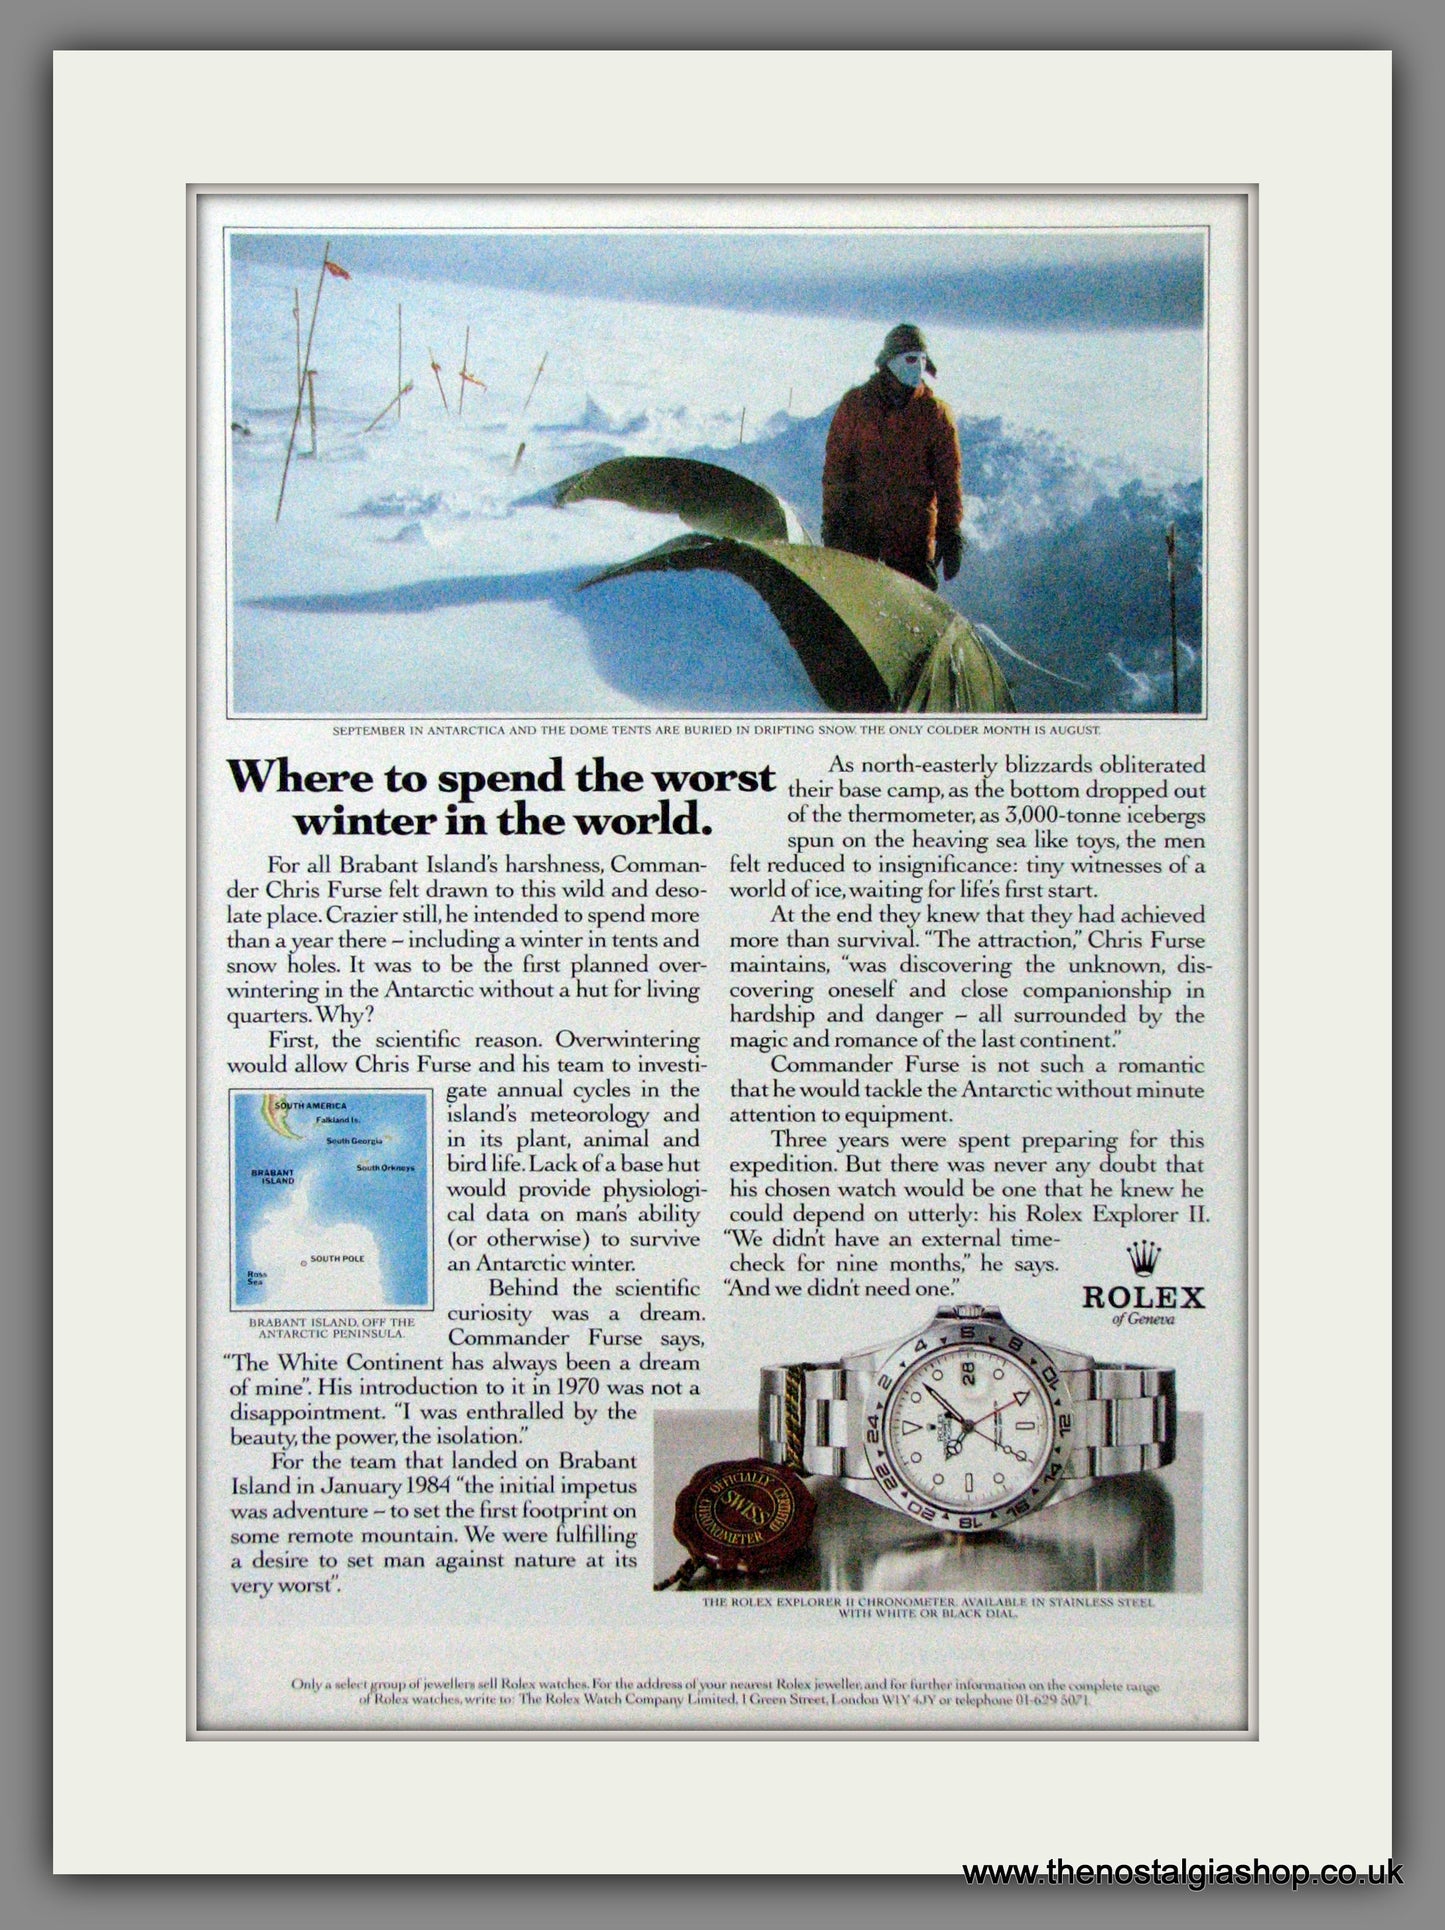 Rolex Explorer II Chronometer in Antartica. Original Advert 1988 (ref AD54358)